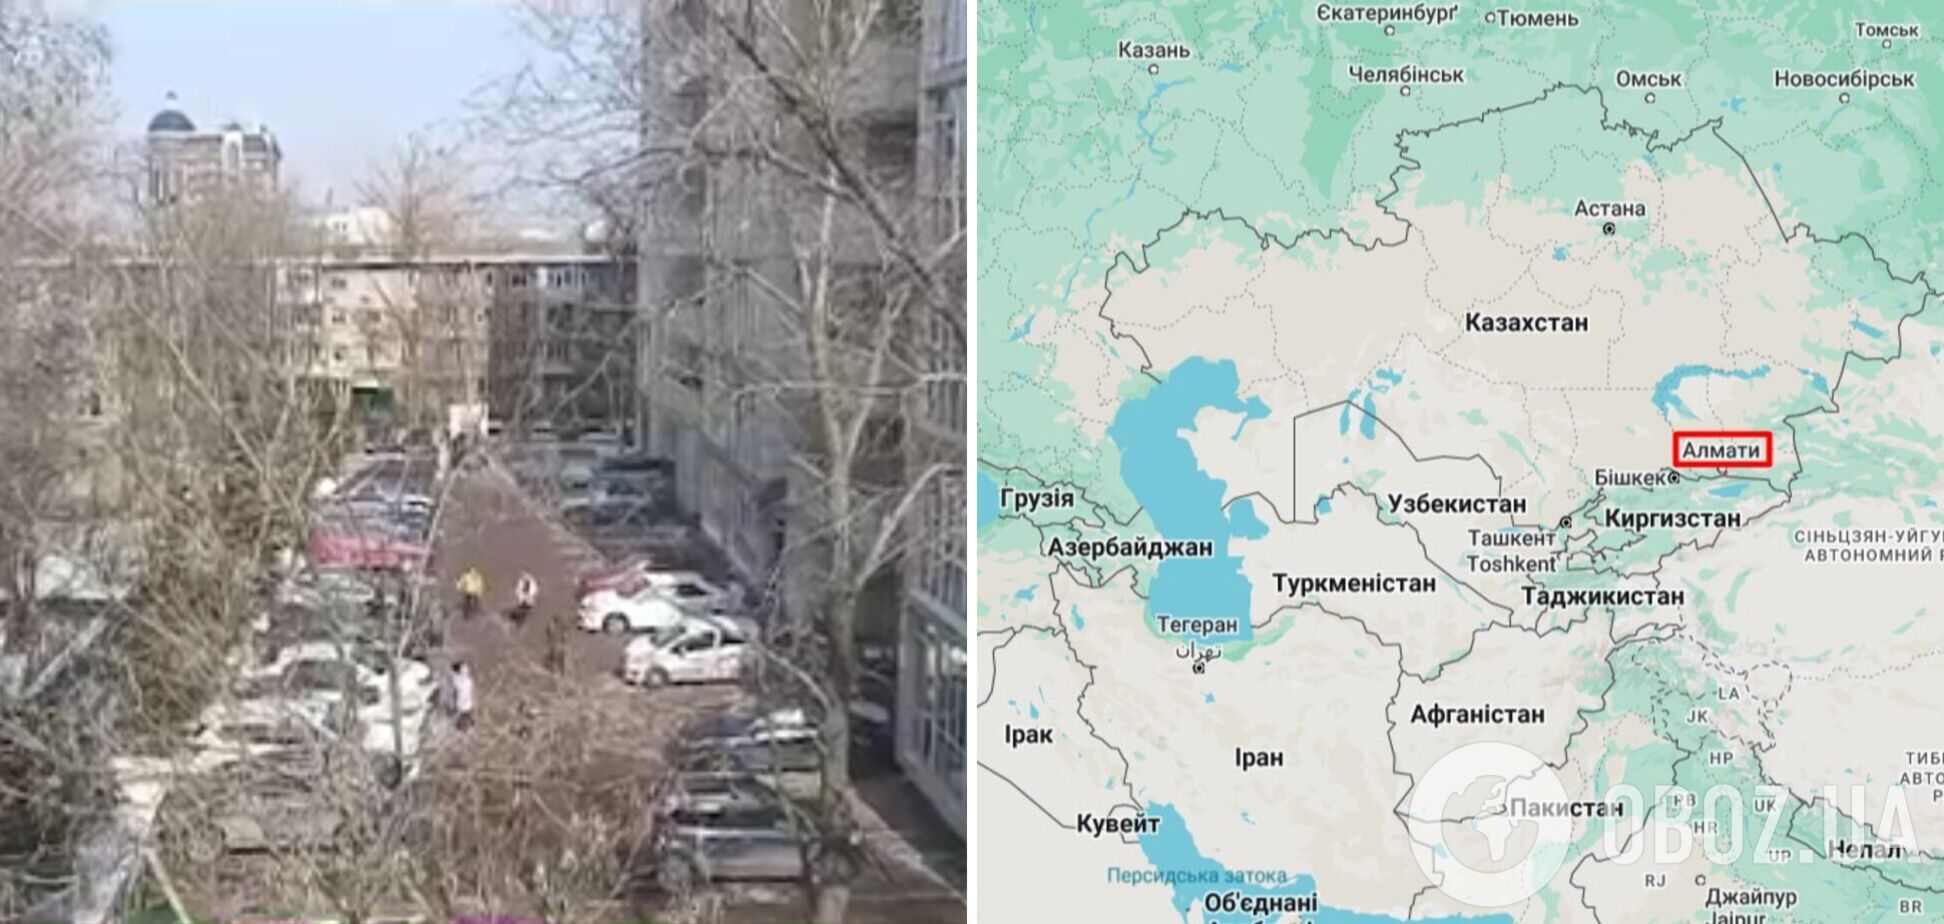 В квартирах шаталась мебель, люди выбегали на улицу: в Казахстане произошло землетрясение магнитудой 6,1. Видео